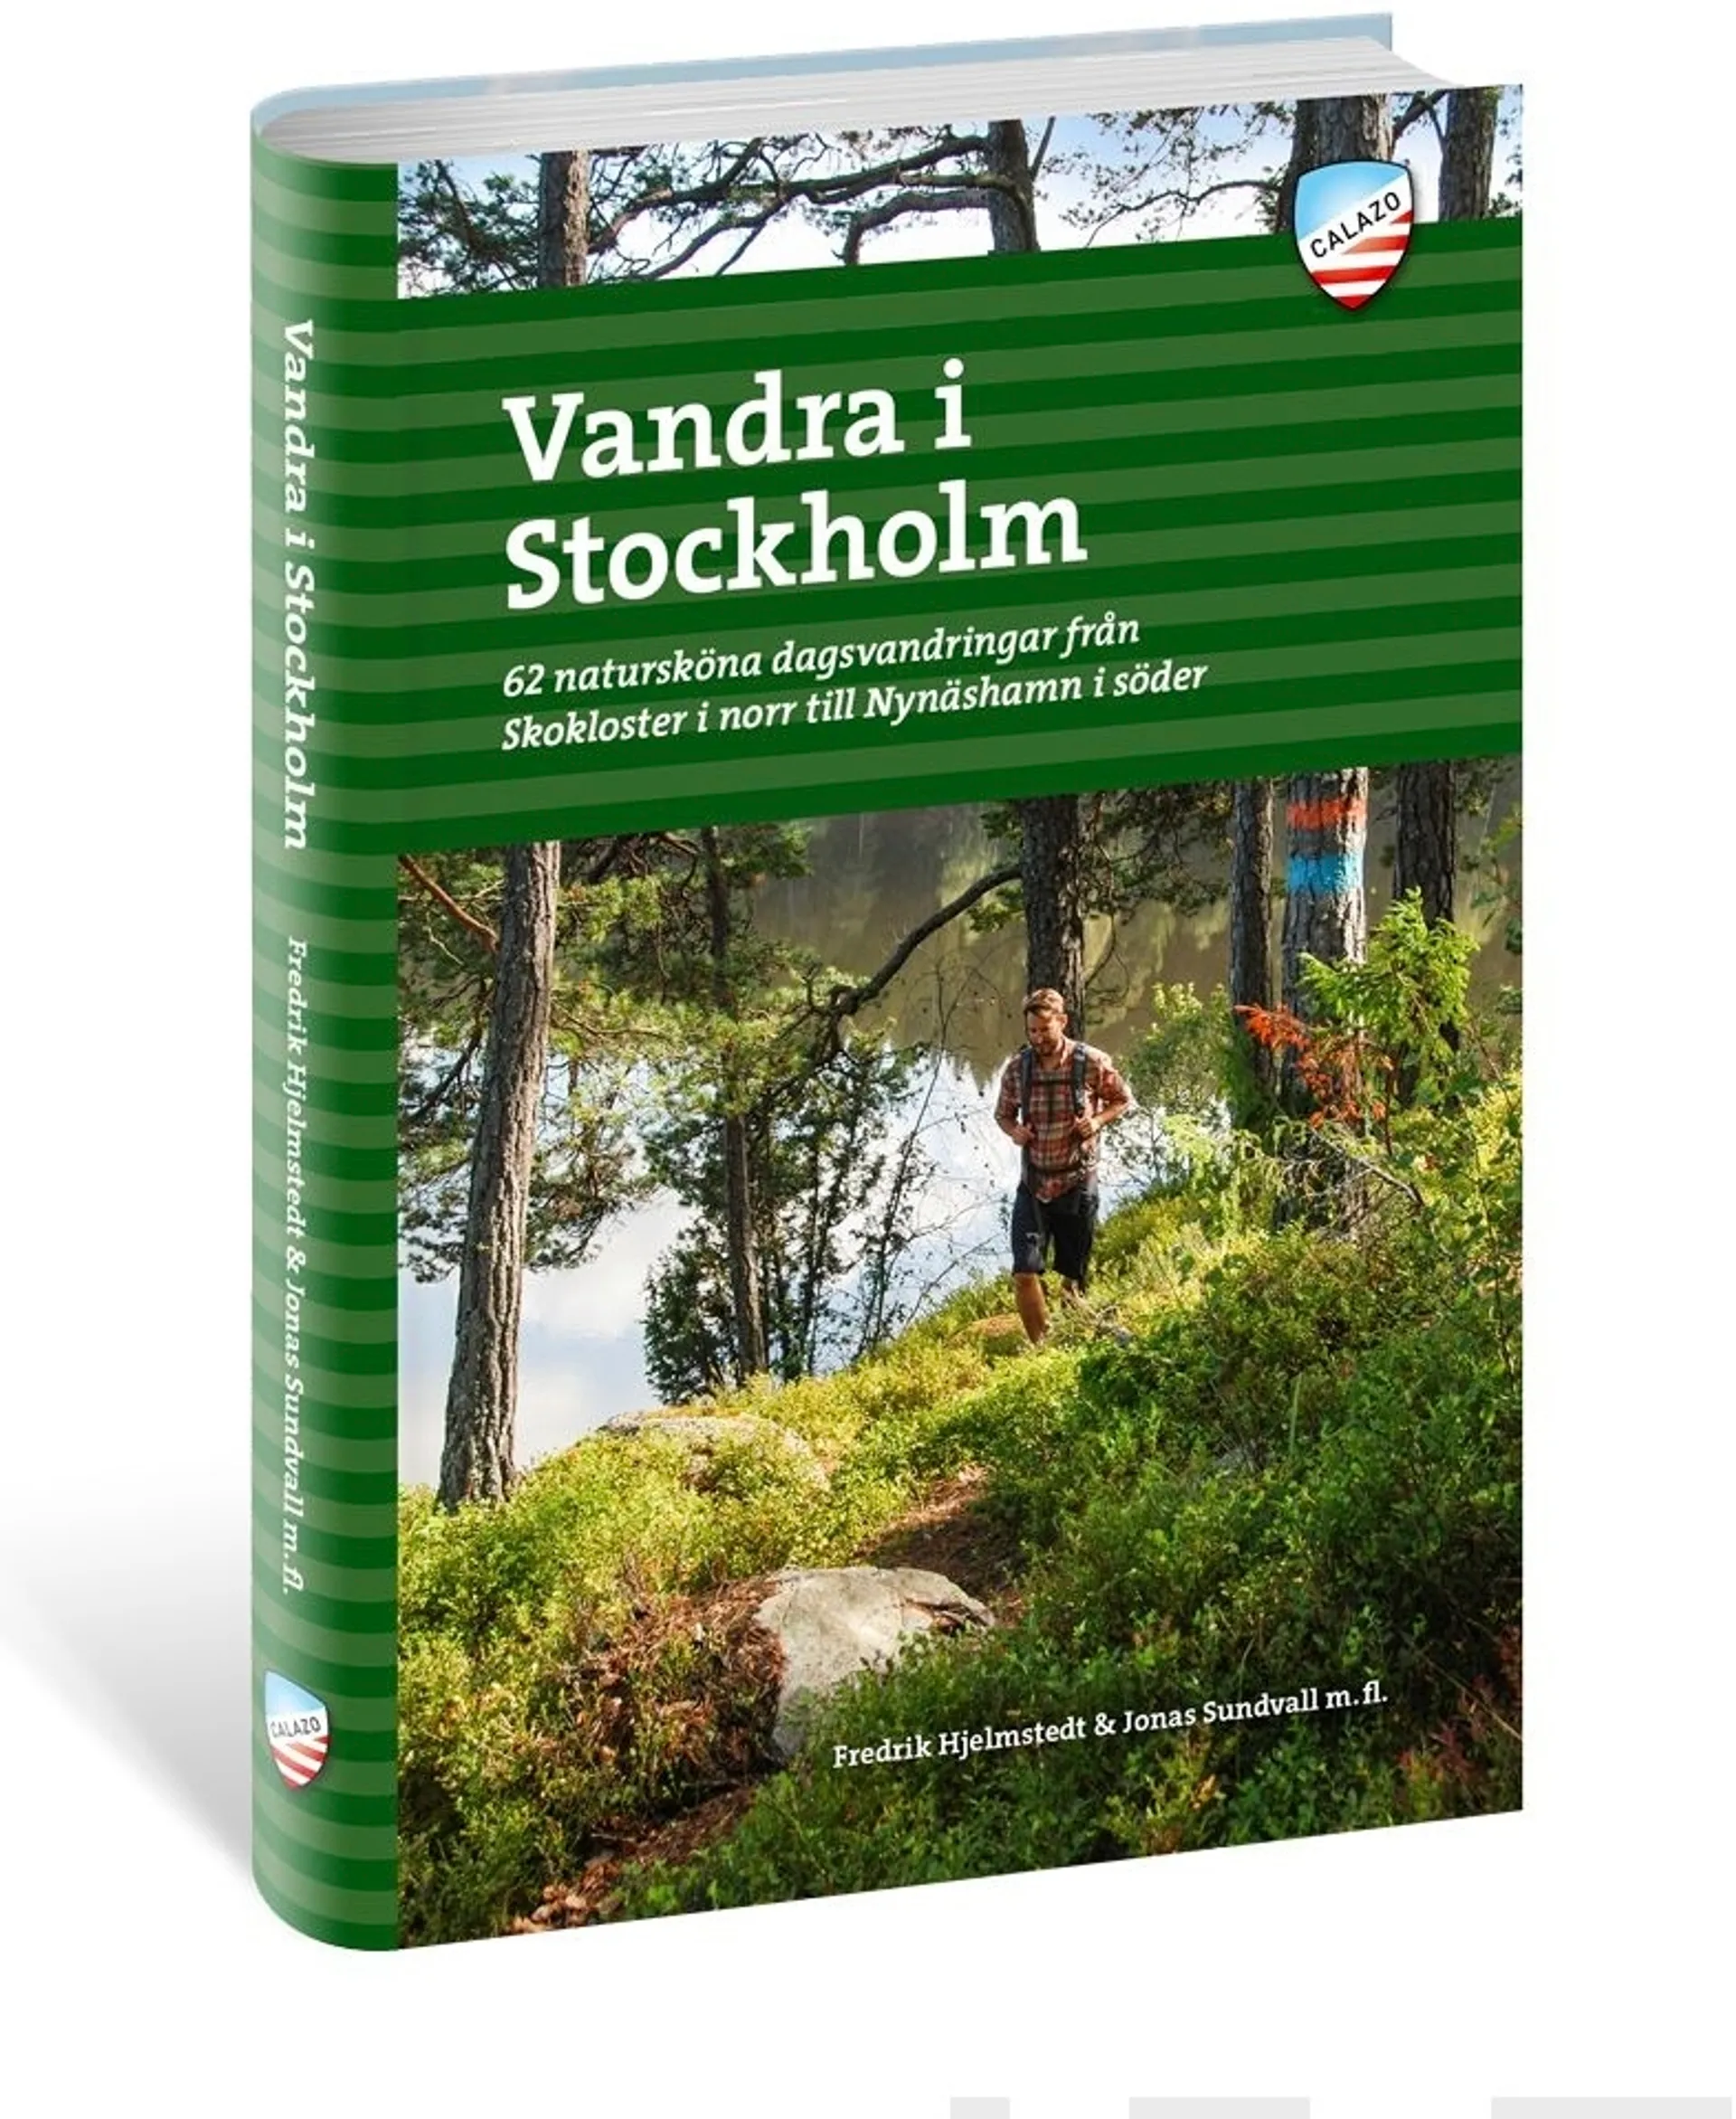 Hjelmstedt, Vandra i Stockholm - 62 natursköna dagsvandringar från Skokloster i norr till Nynäsham i söder